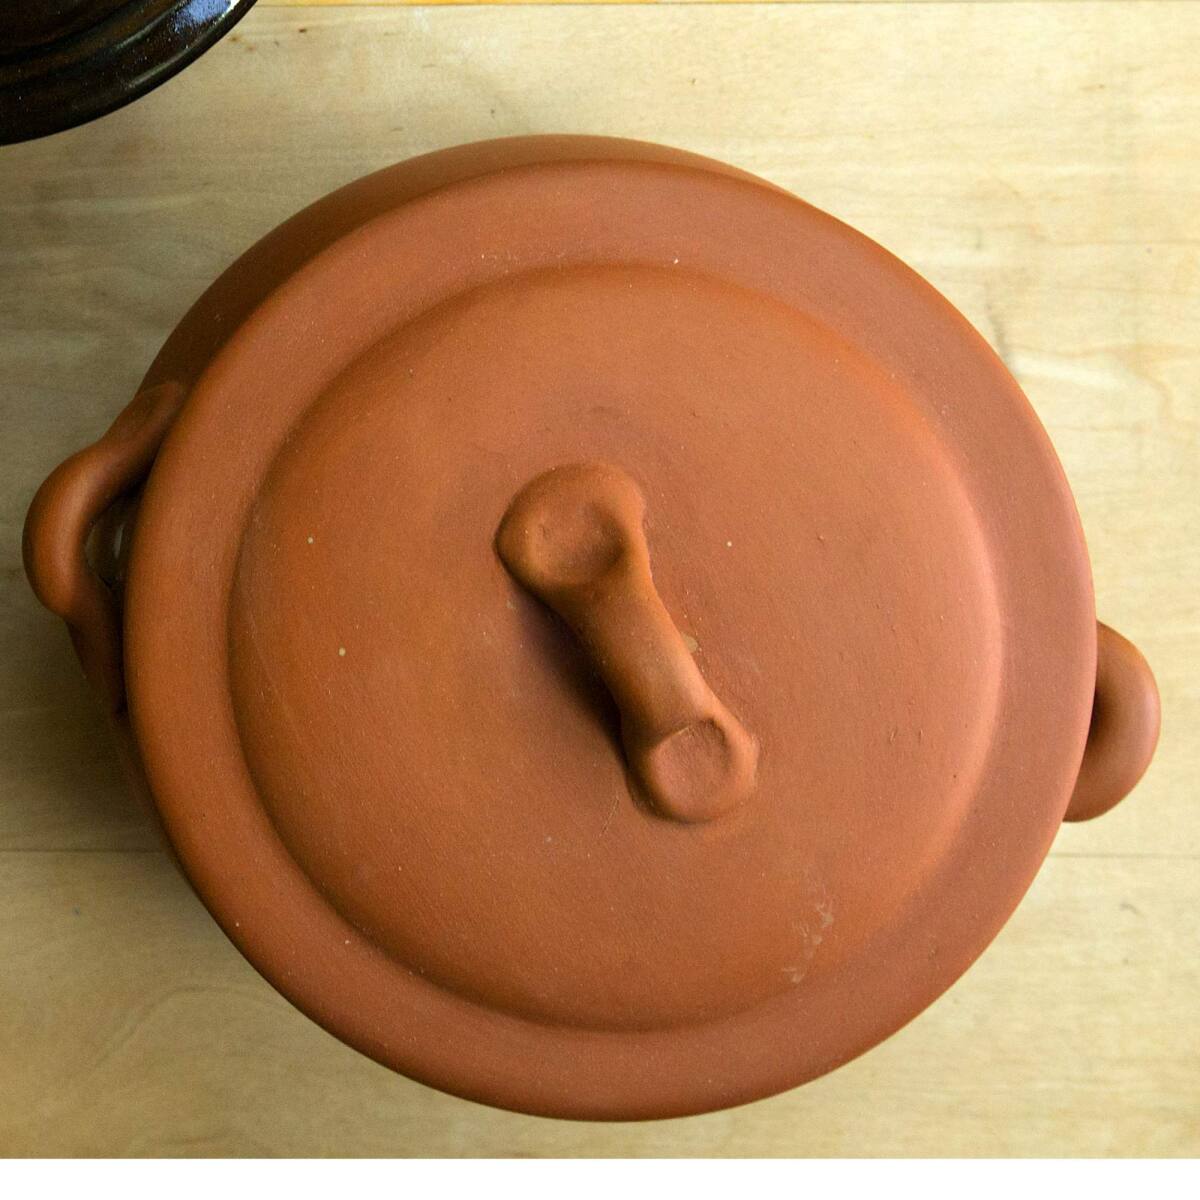 Vulcania Italian Clay Bean Pot